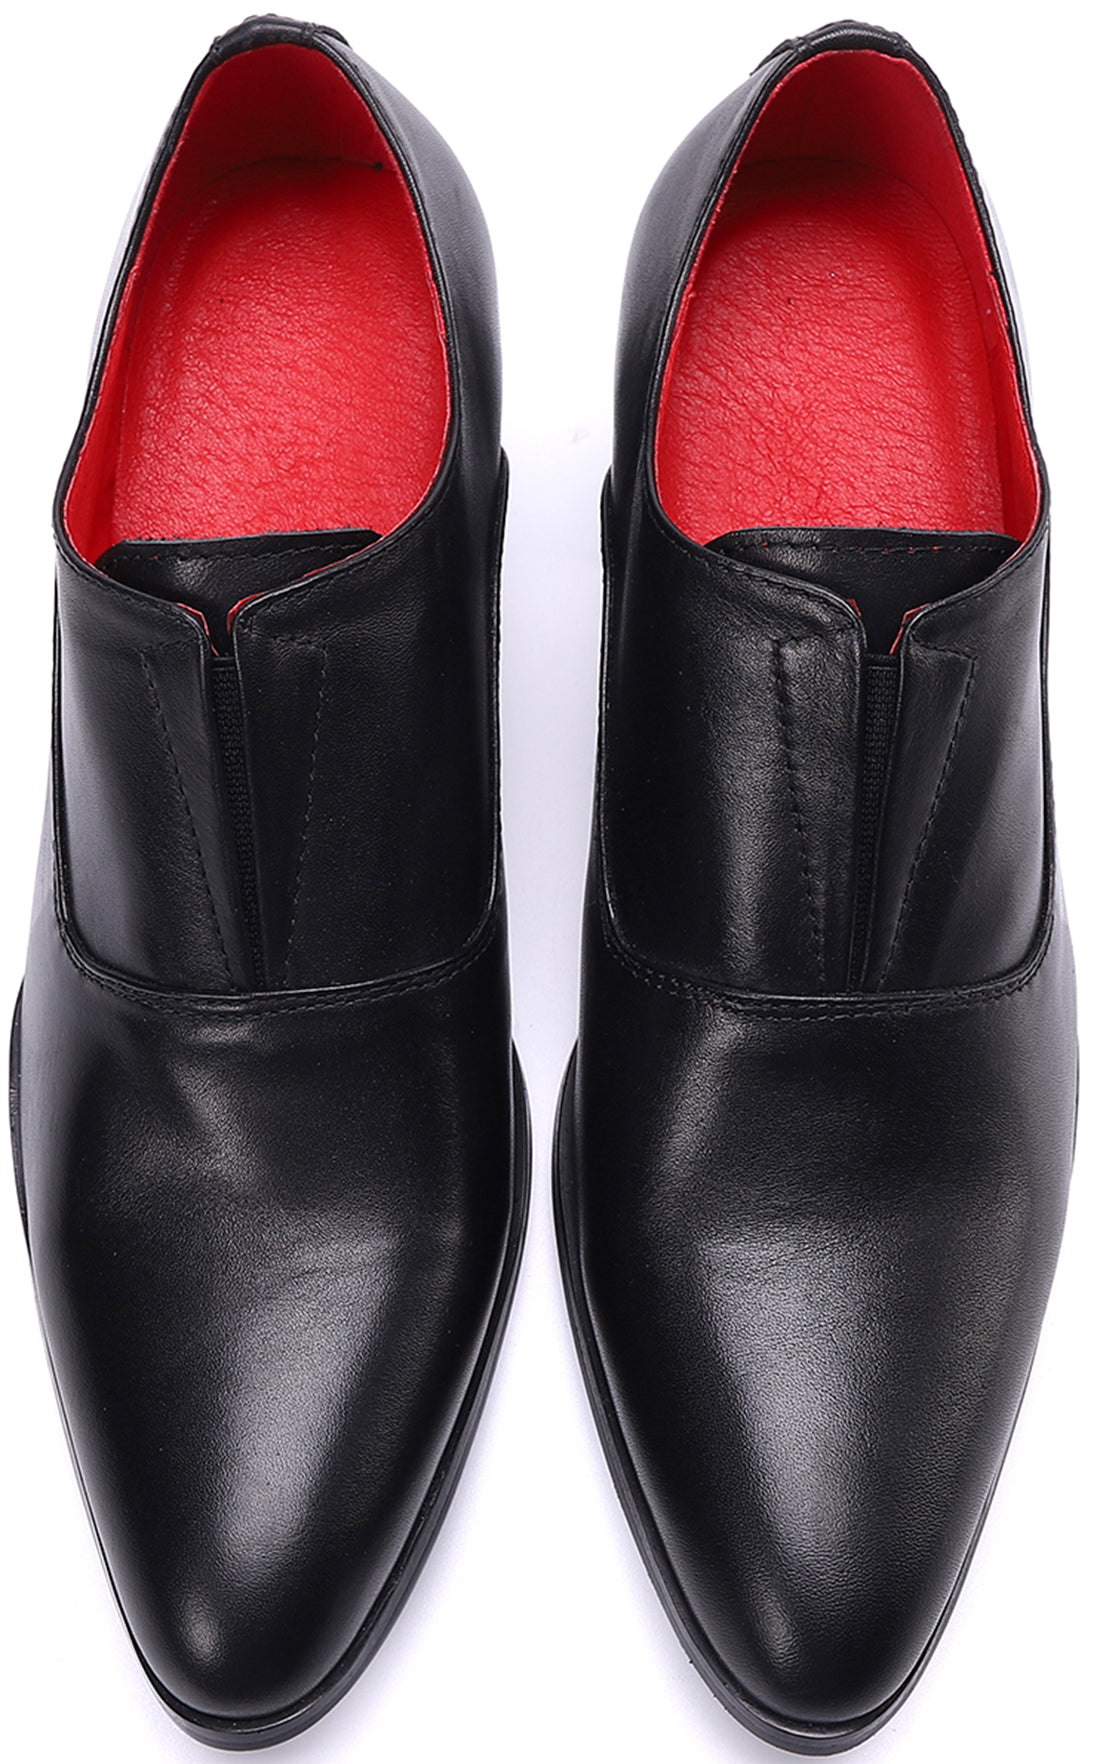 Men's Slip-on Cuban Heel Leather Loafer